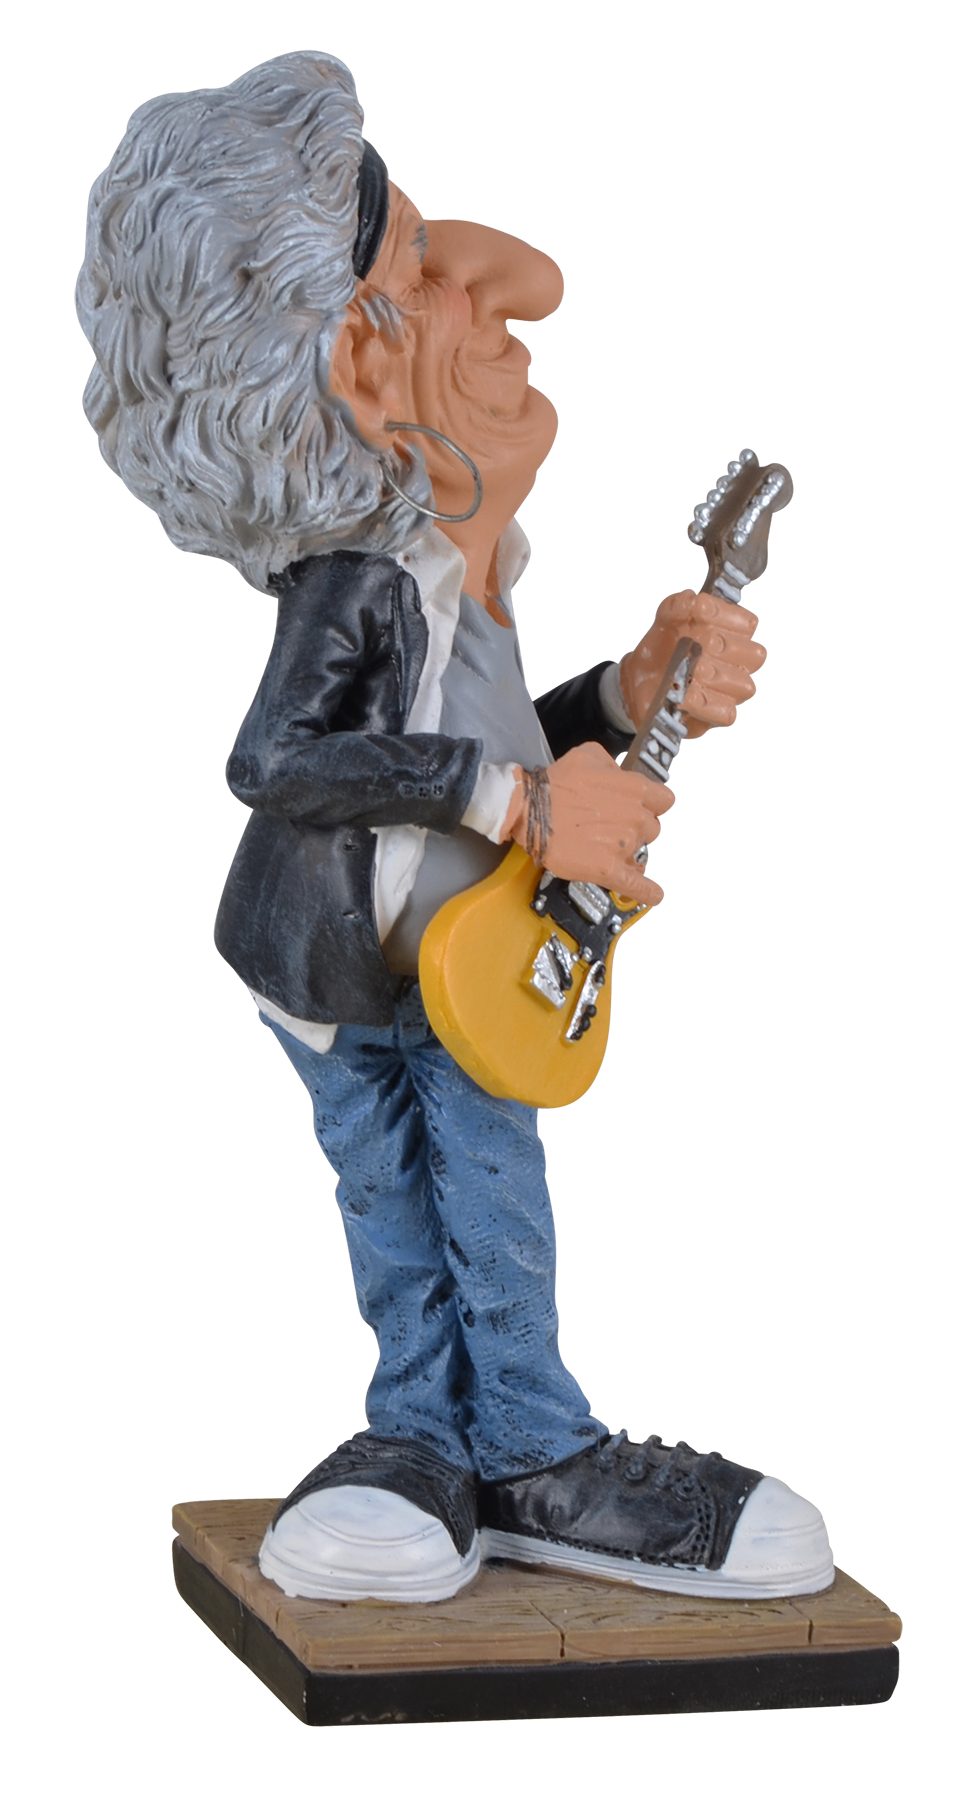 Vogler direct berühmtesten Rockband aus der von ca. LxBxH von Gmbh Hand 8x6x17cm Dekofigur Funny Keith Welt, der Life-Rockstar Kunststein, coloriert